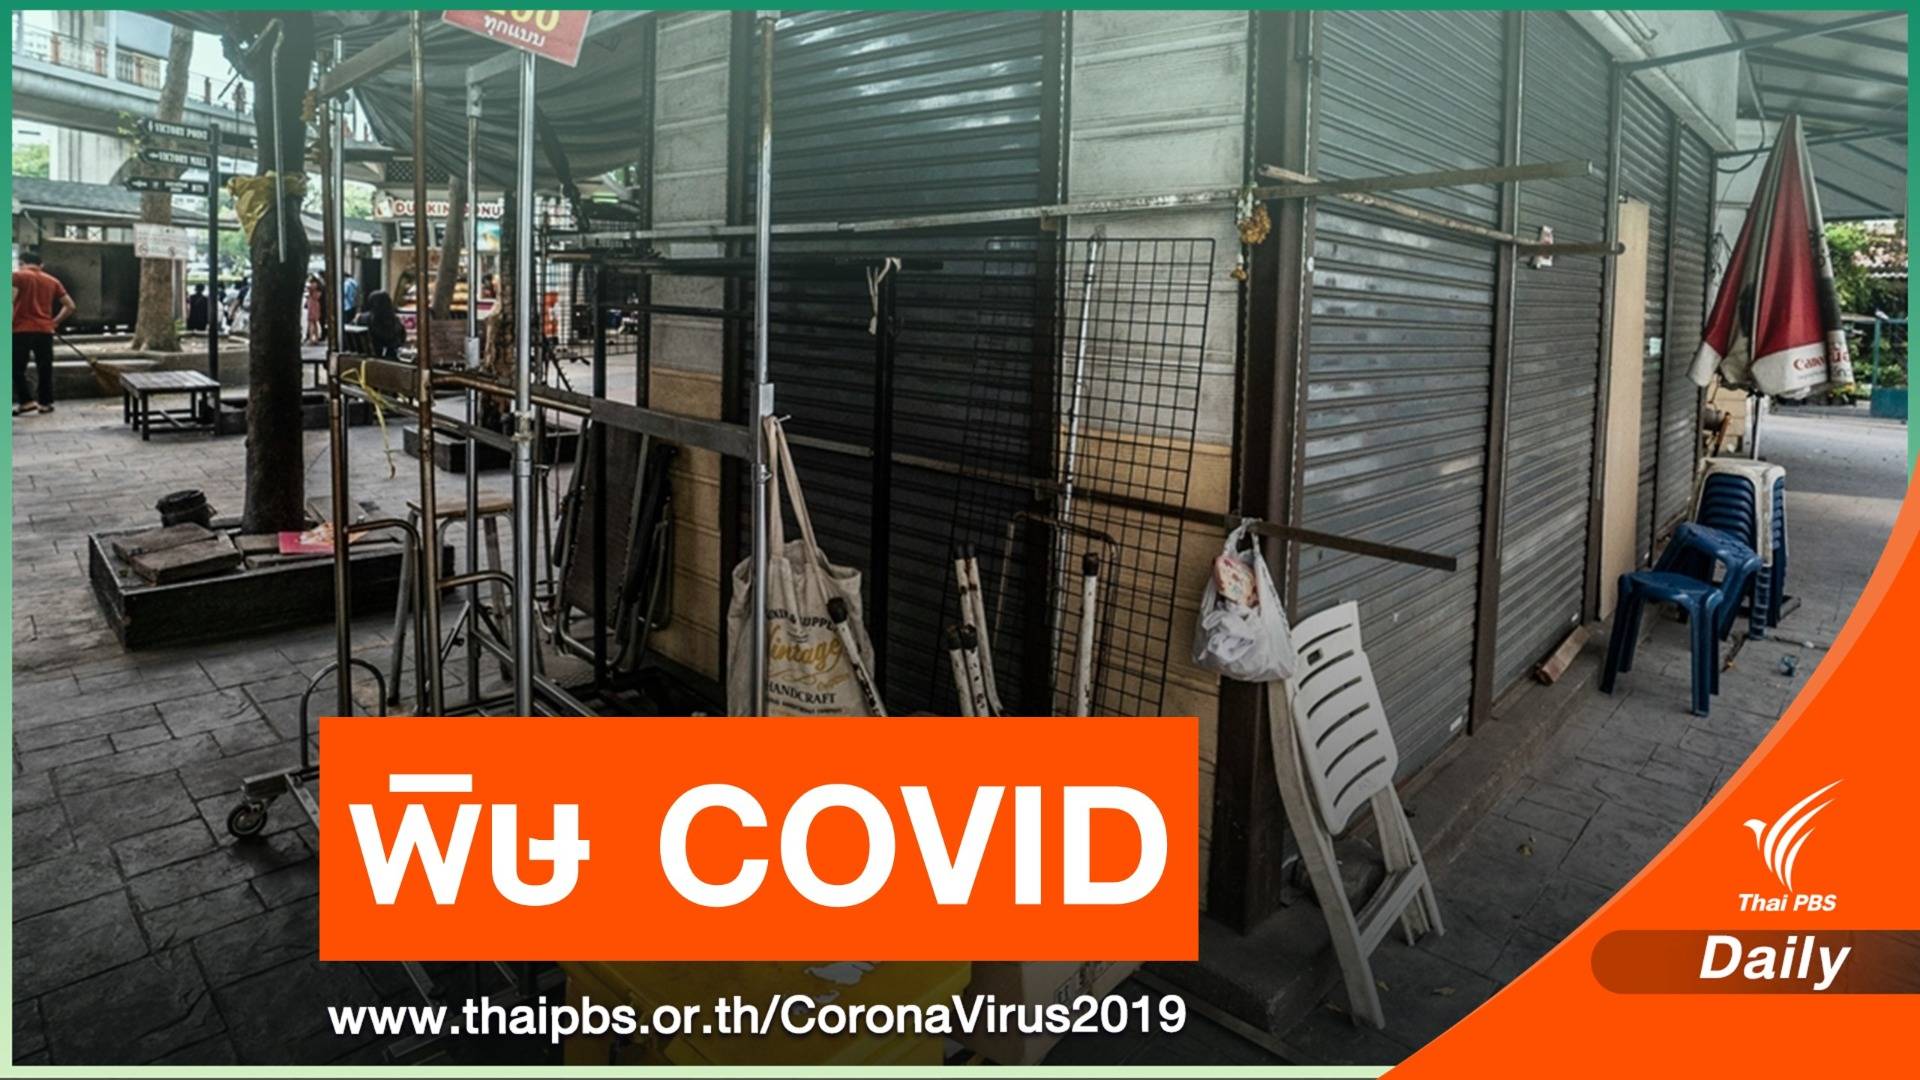 ประเมิน COVID-19 ทำระบบเศรษฐกิจเสียหาย 1 ล้านล้านบาท